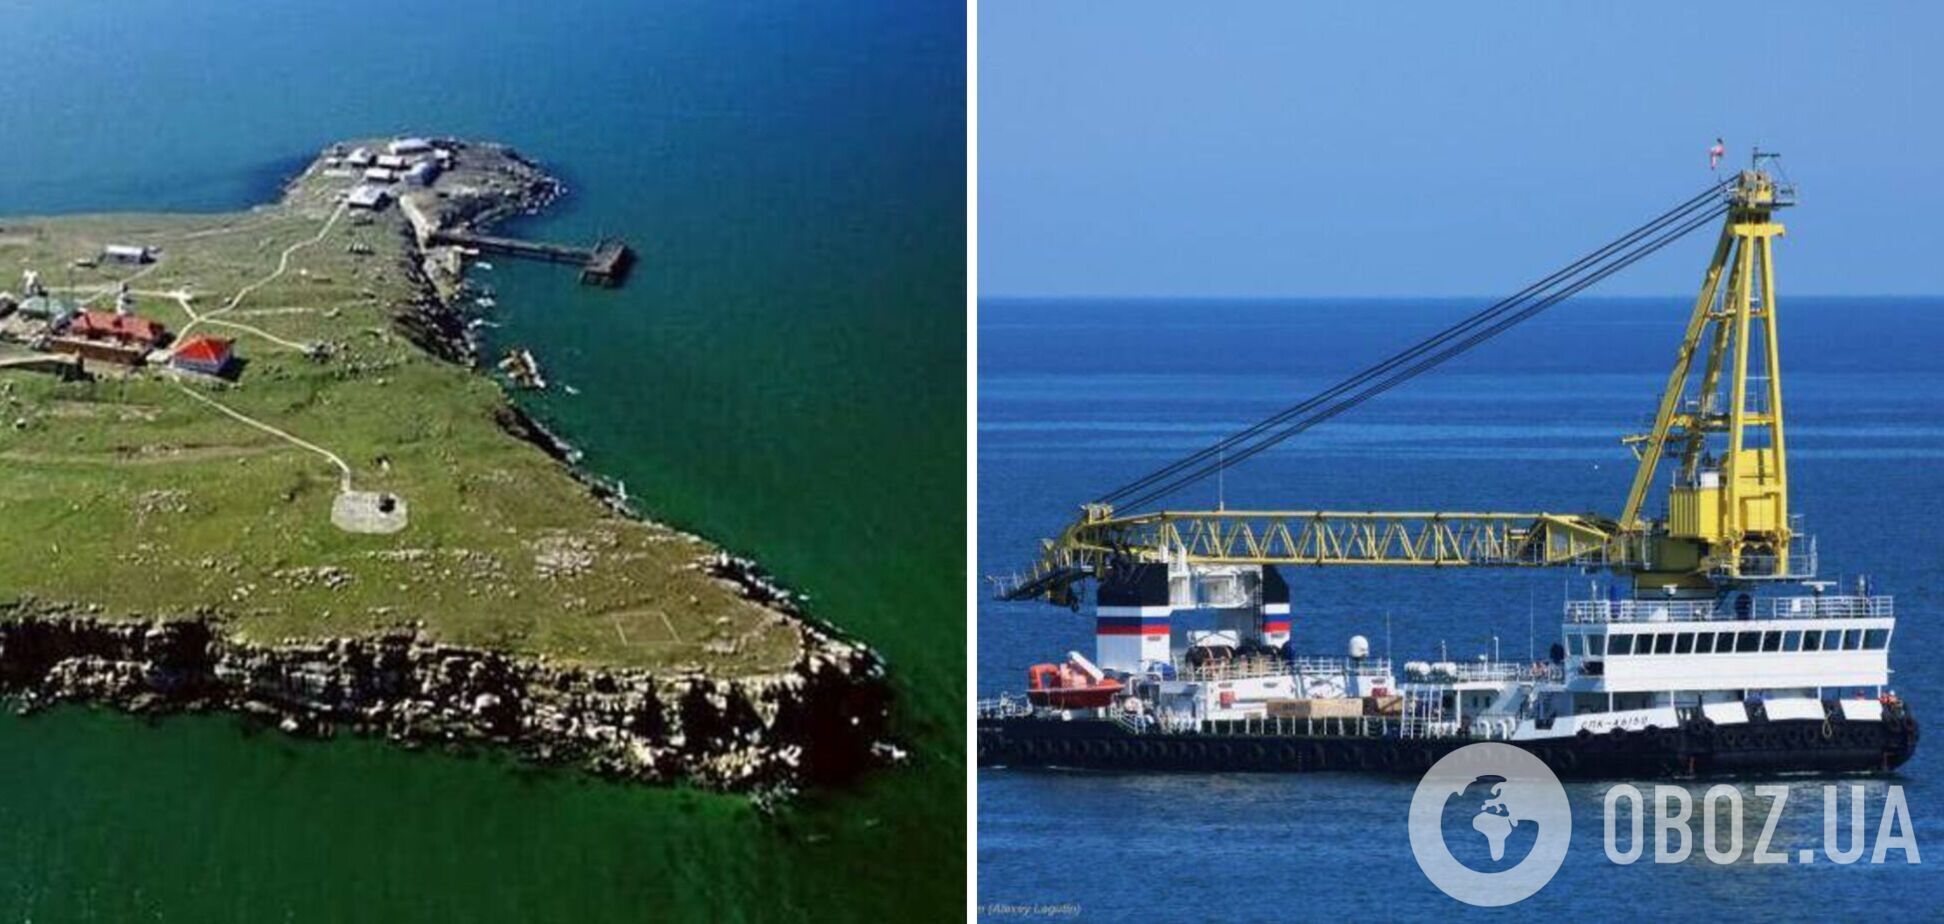 Росія намагається перетворити острів Зміїний на плацдарм: помітили кораблі із системами ППО. Фото